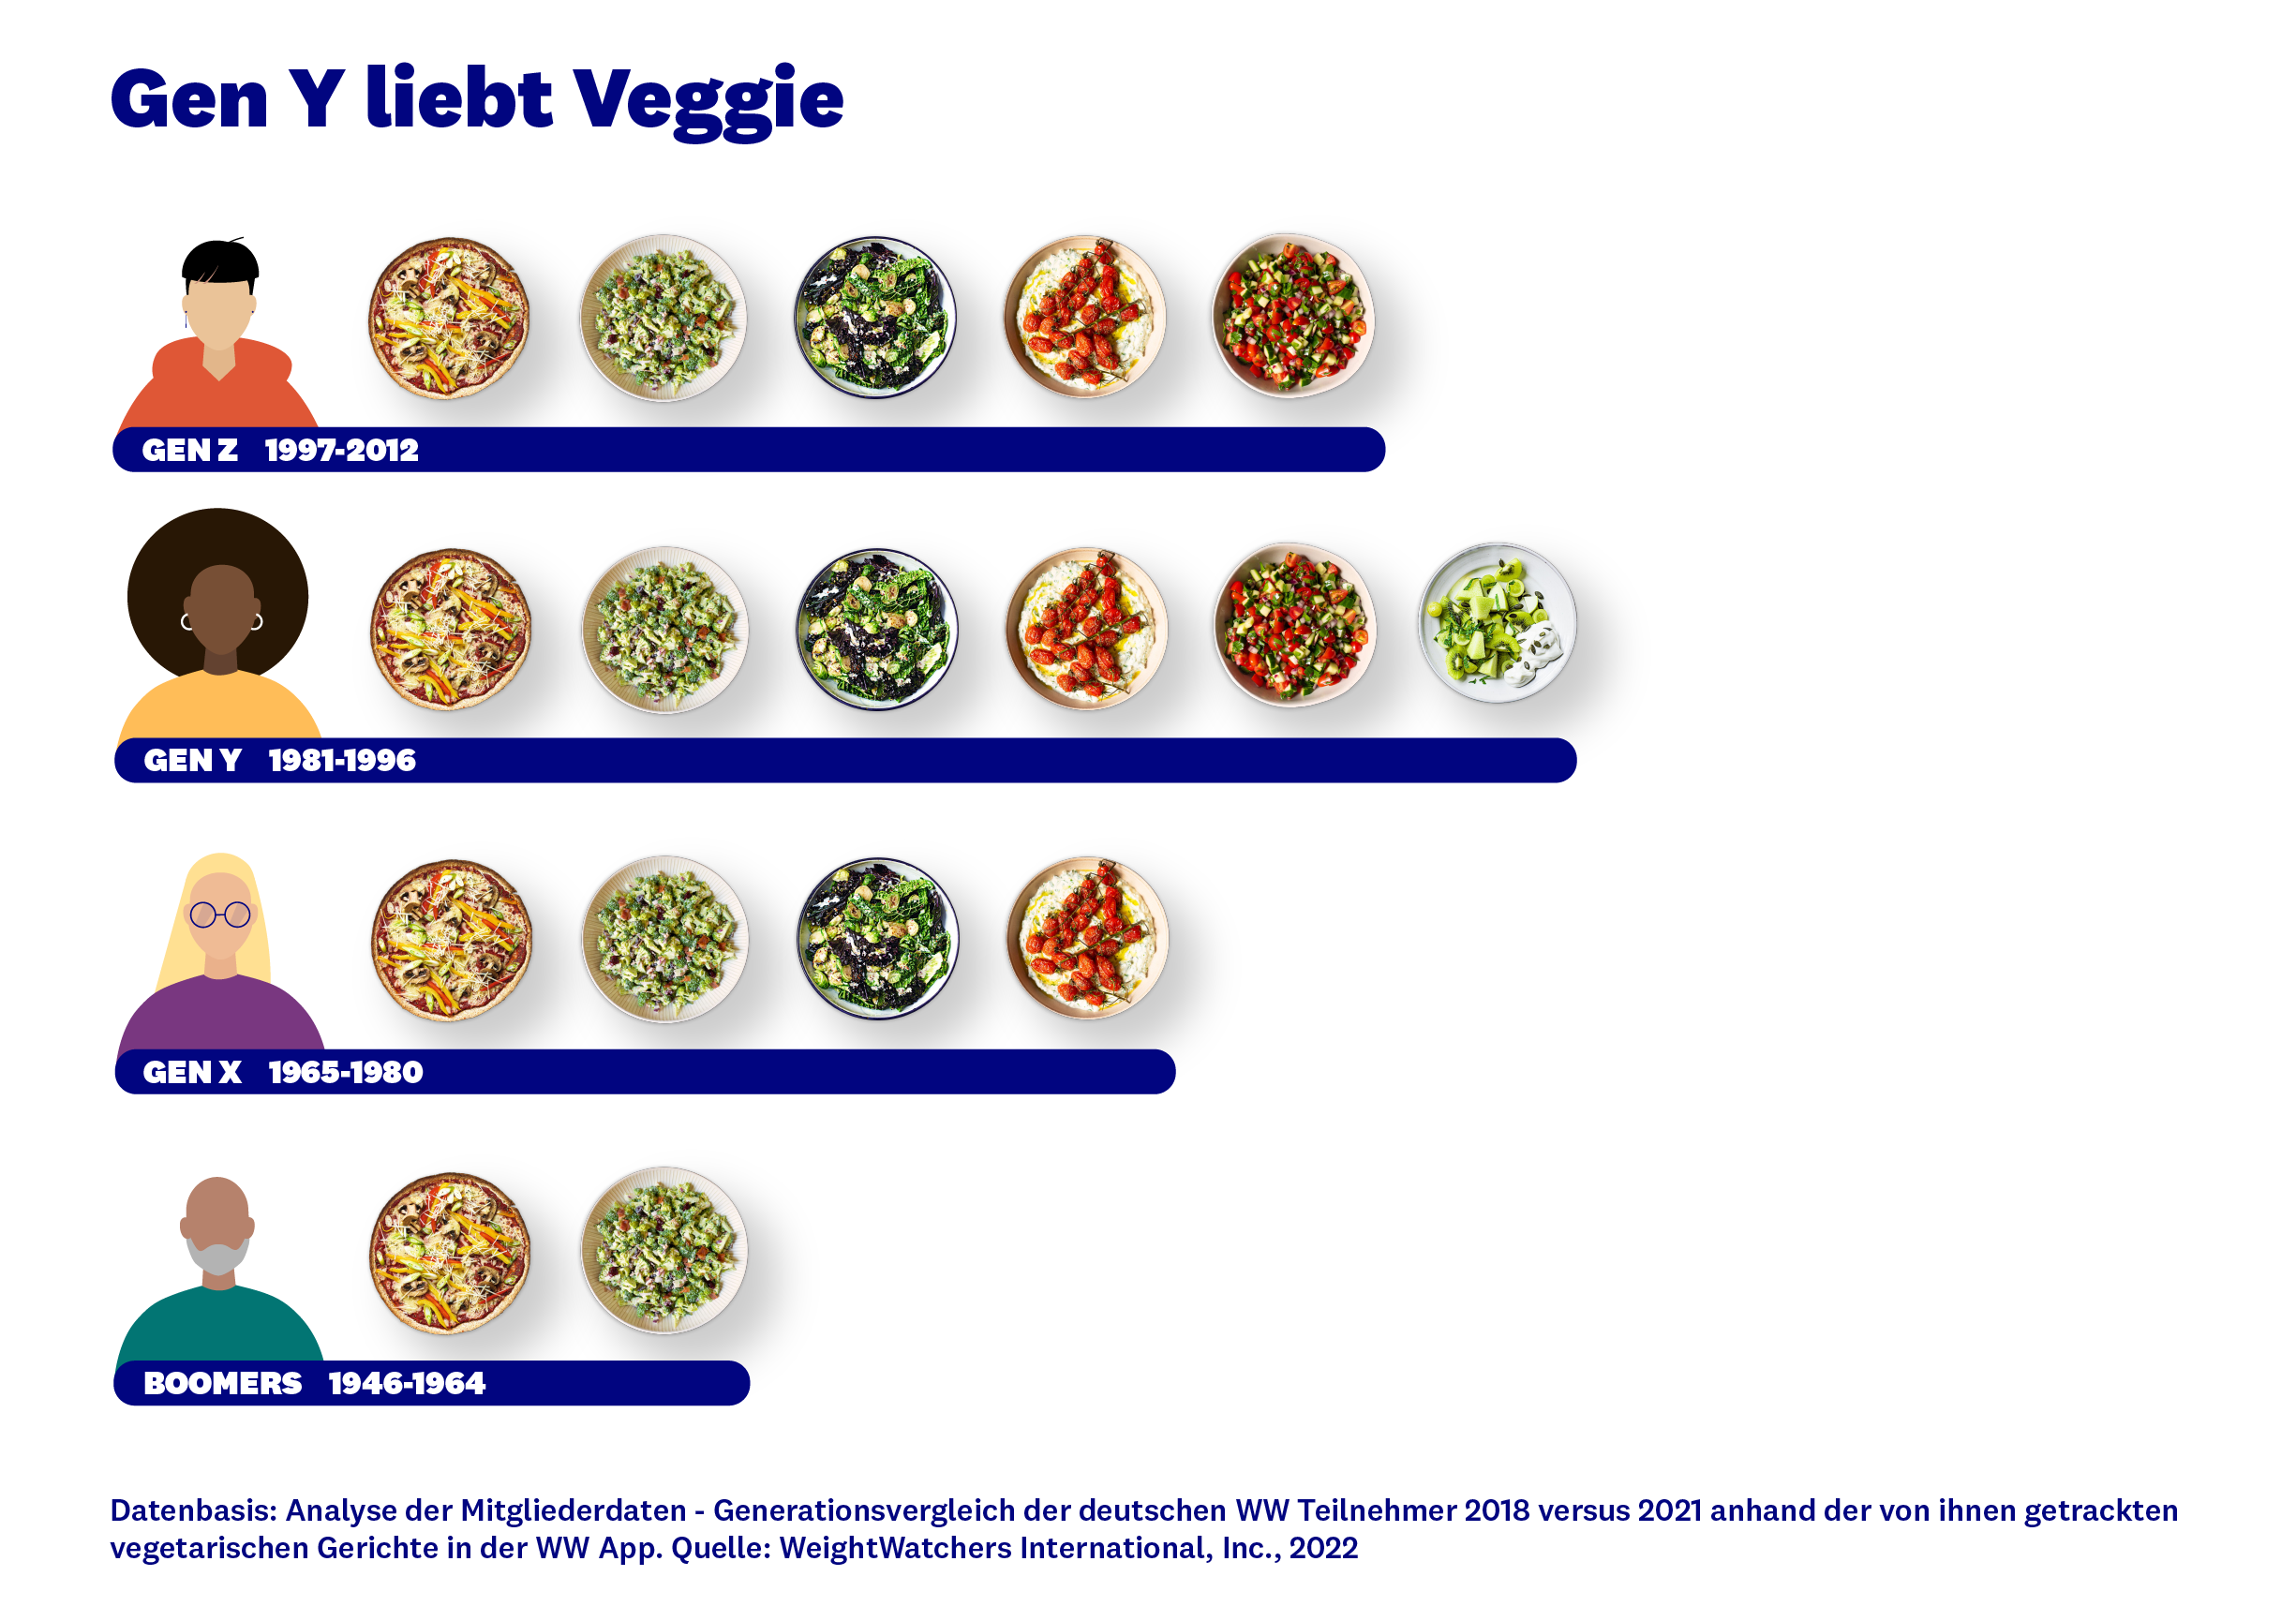 Vor allem Weightwatchers-Mitglieder, die zwischen 1981 und 1996 geboren sind, tracken vegetarische Gerichte in der App von Weightwachters - Quelle: Weightwatchers International, Inc., 2022